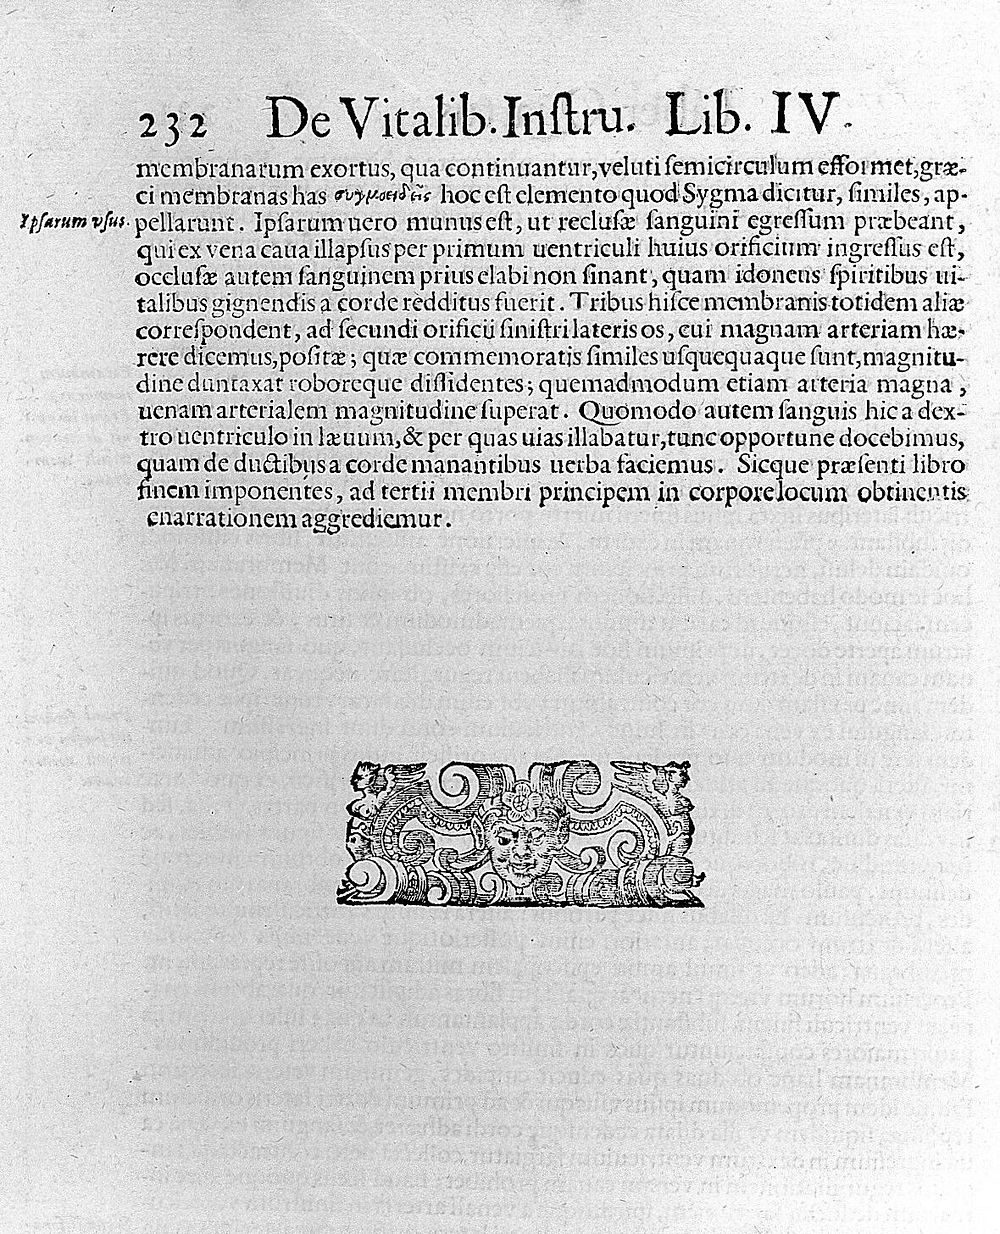 Anatome corporis humani ... / Nunc primum a Michaele Columbo latine reddita, et additis novis aliquot tabulis exornata.